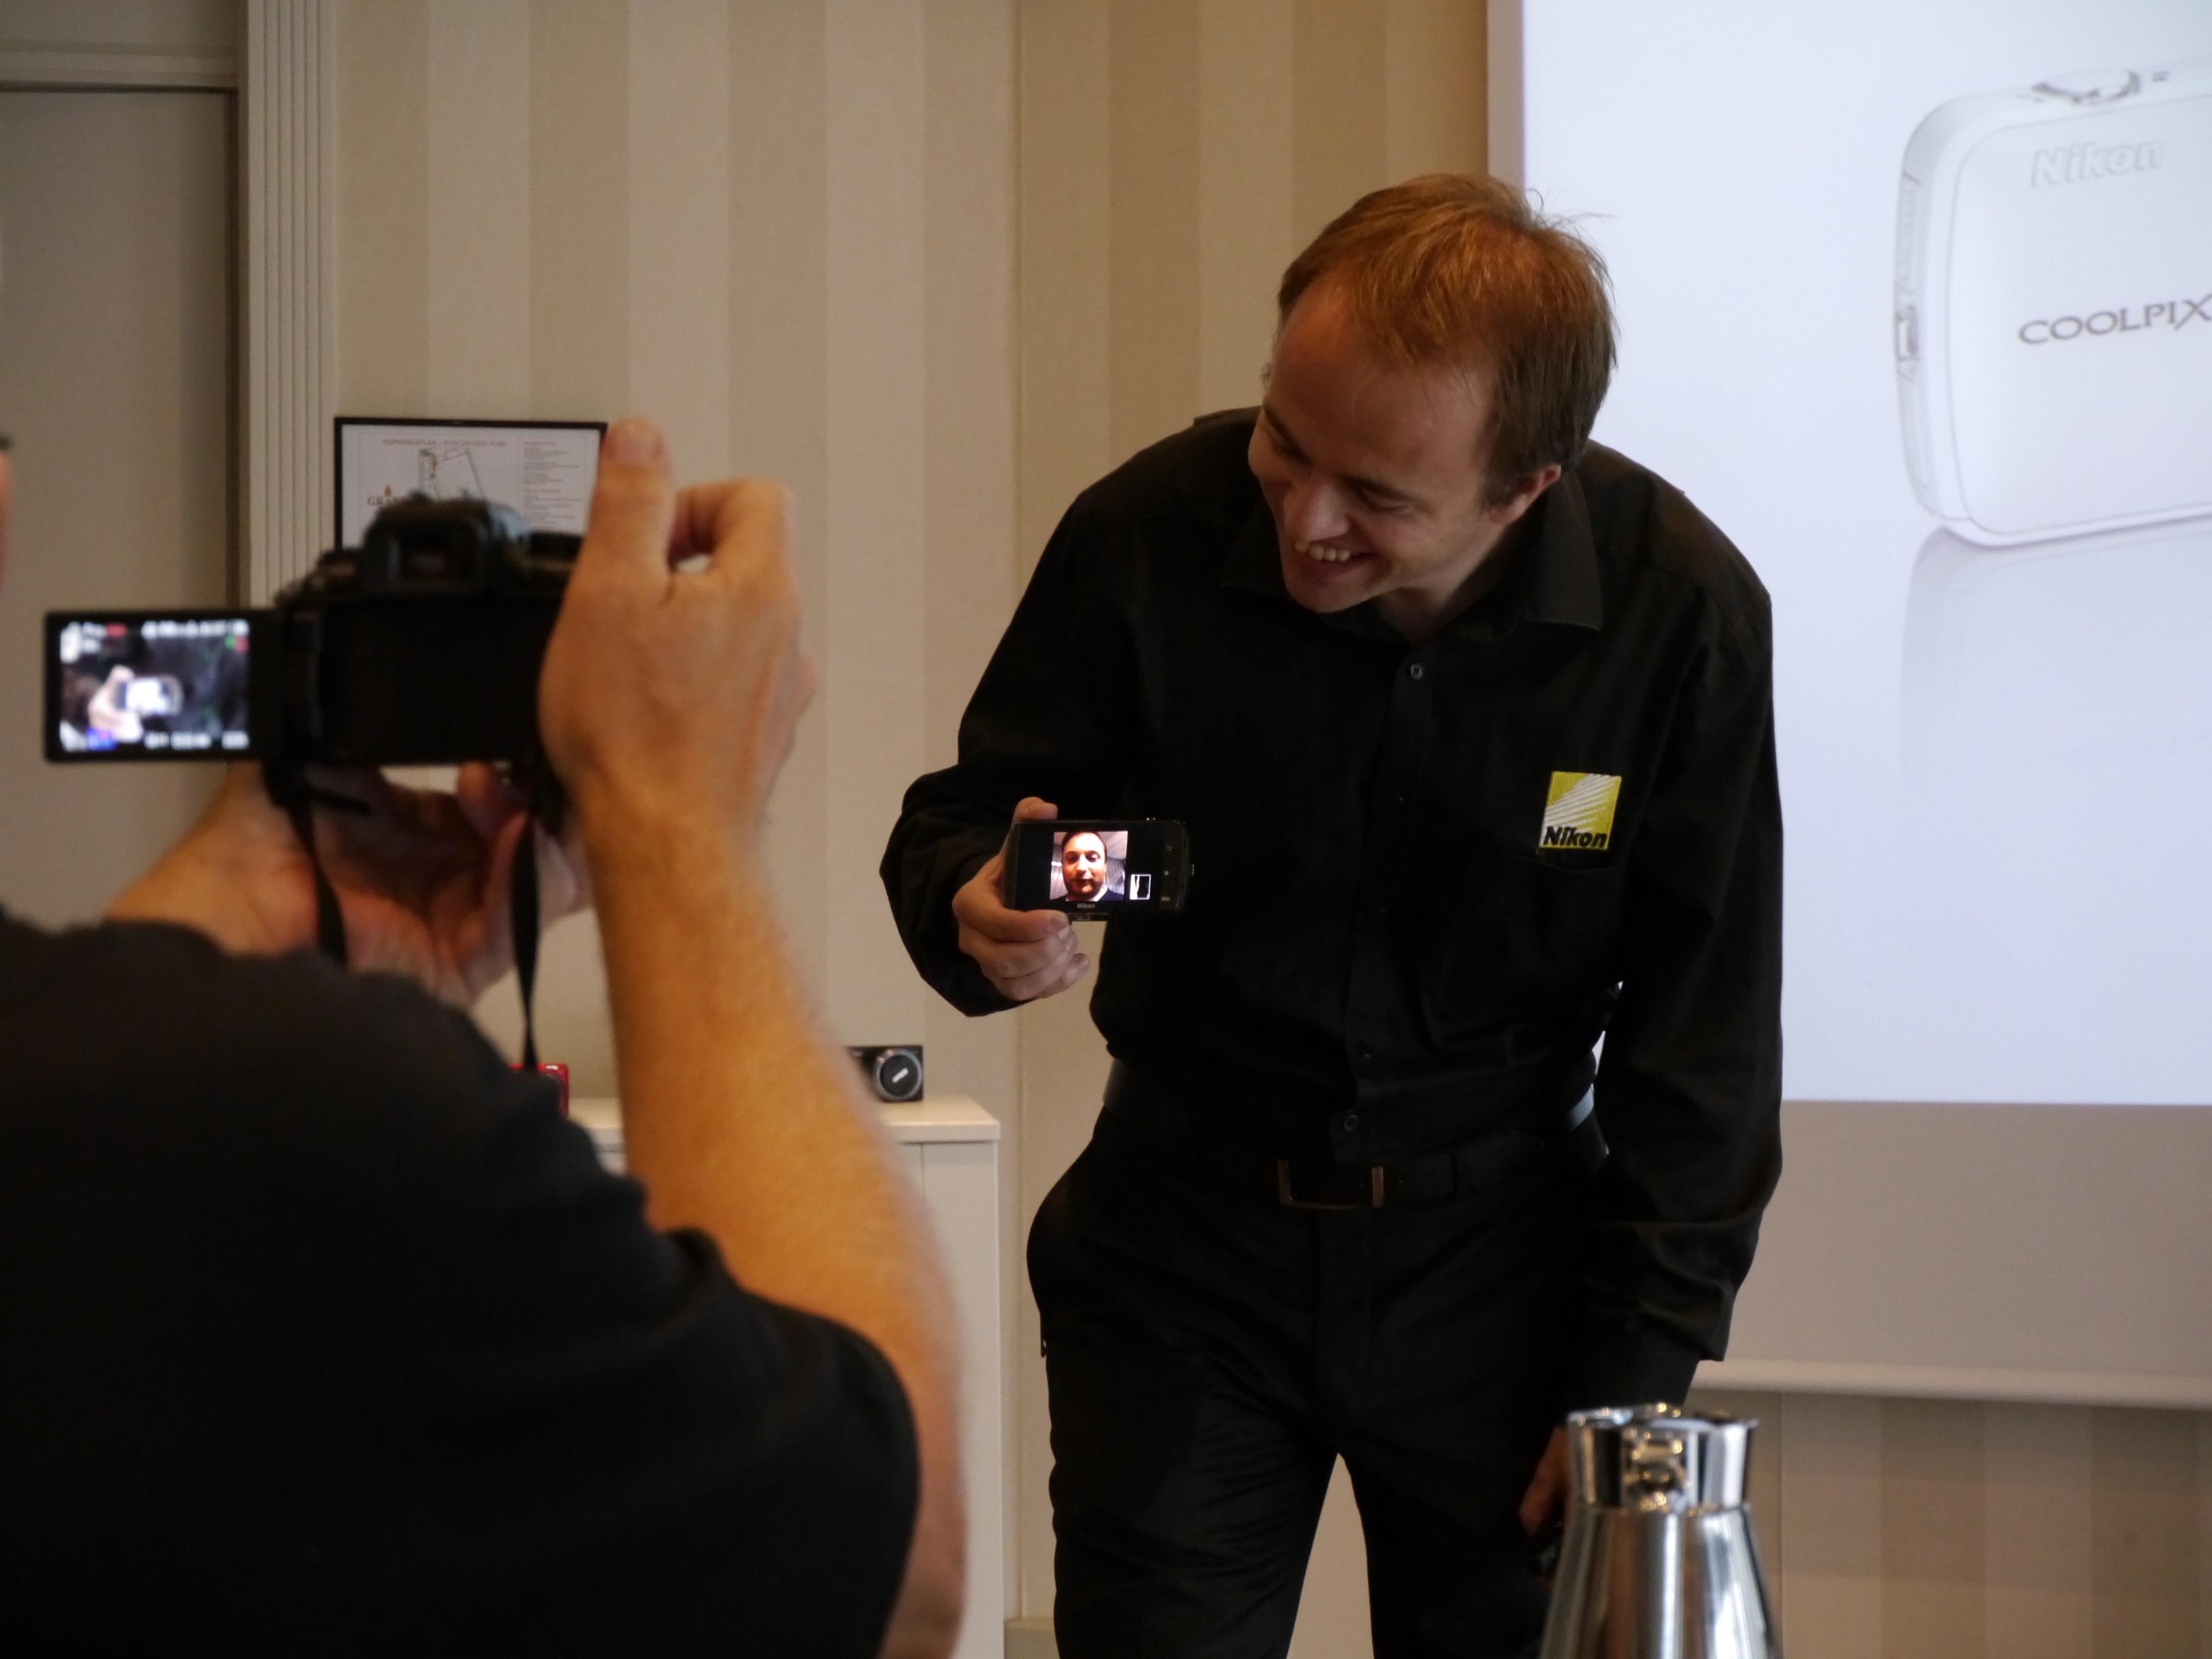 Nikons produktspesialist Jon Aasen viser frem det nye Androidkameraet Coolpix S800c.Foto: Paal Mork-Knutsen, Akam.no